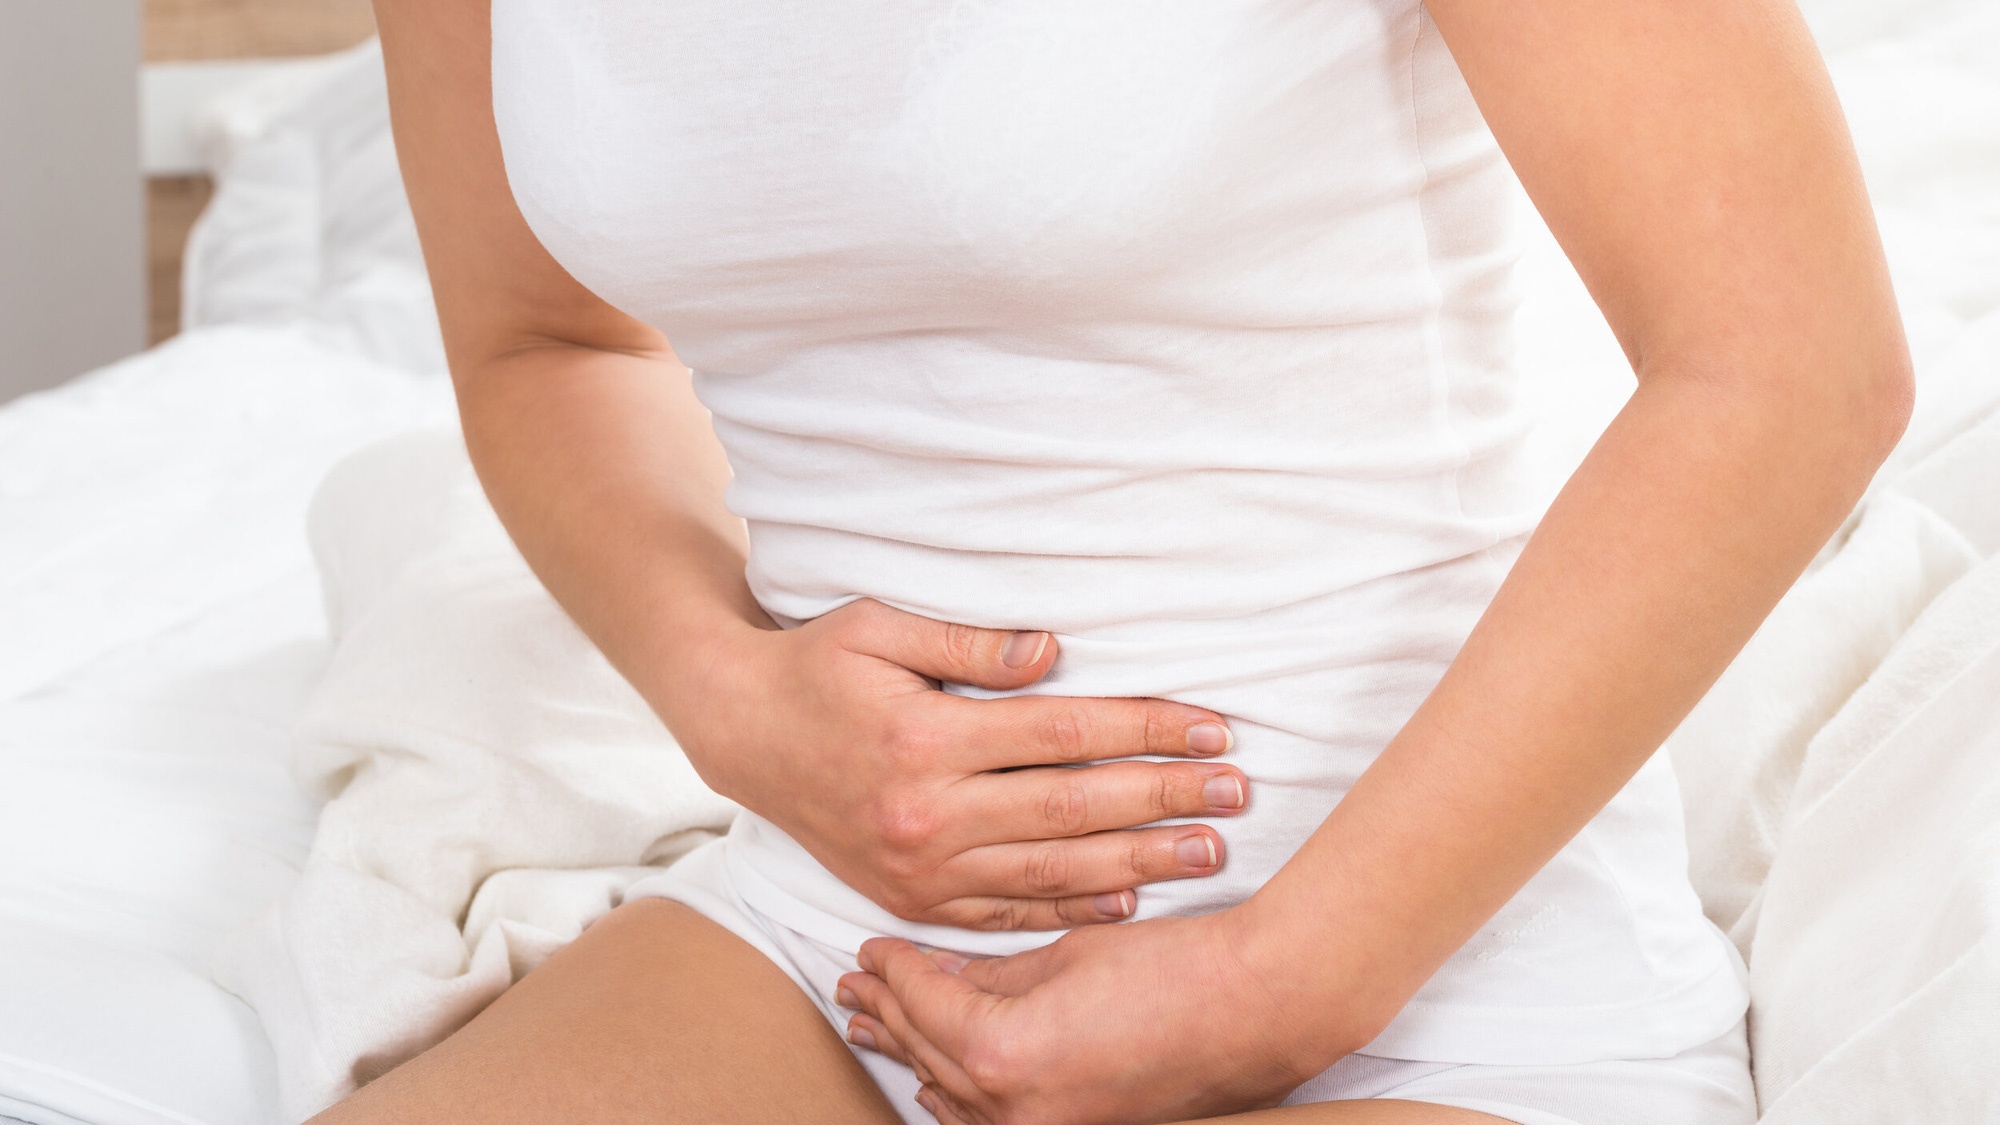 Cách phòng ngừa và duy trì sức khỏe khi có khả năng bị đau bụng trên rốn dưới ức?